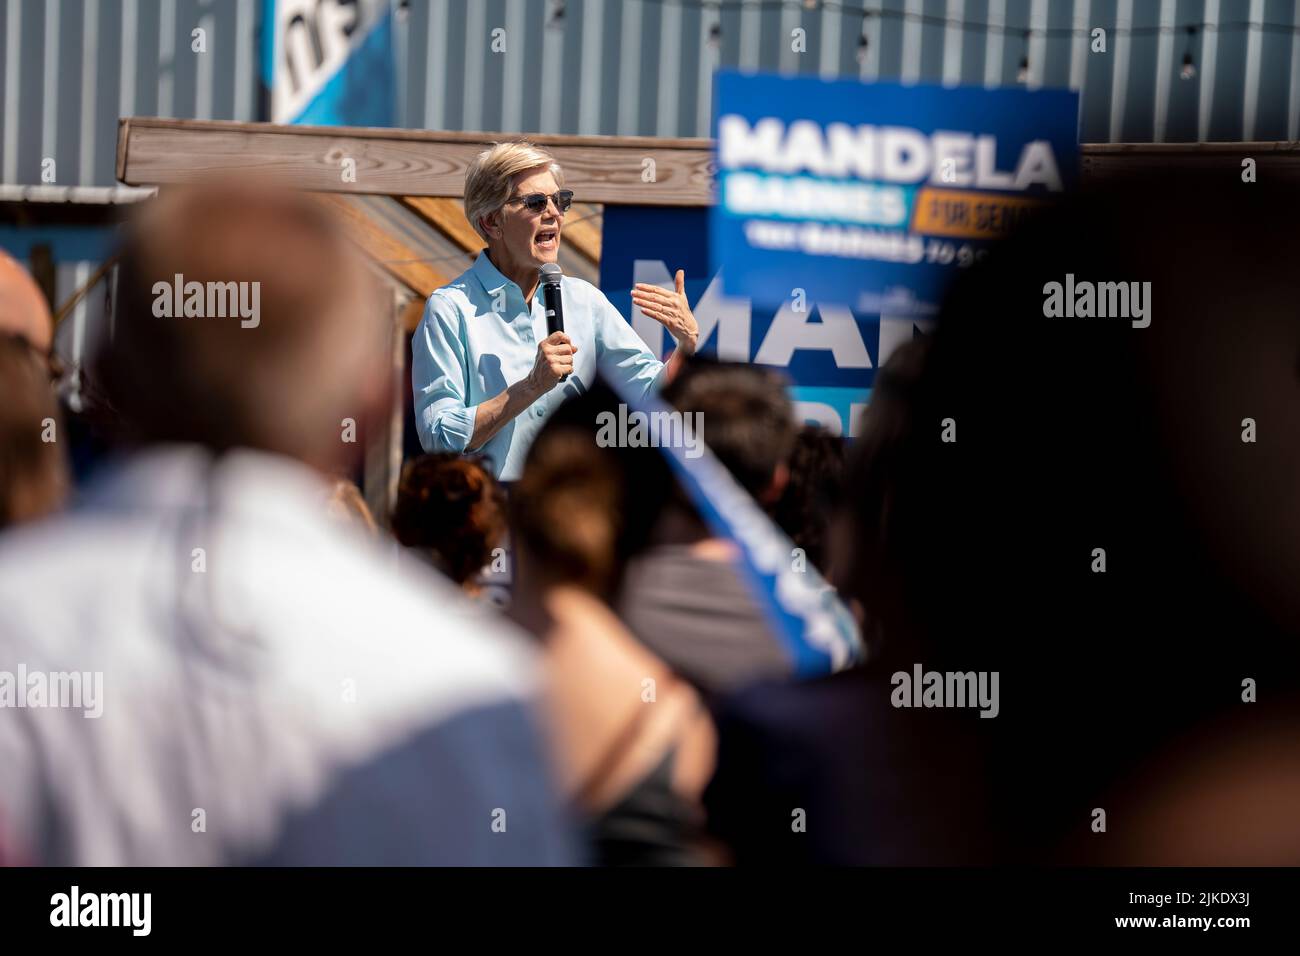 Democratic senator Elizabeth Warren speaks at an outdoor event for candidate Mandela Barnes in Milwaukee, Wisconsin. Stock Photo